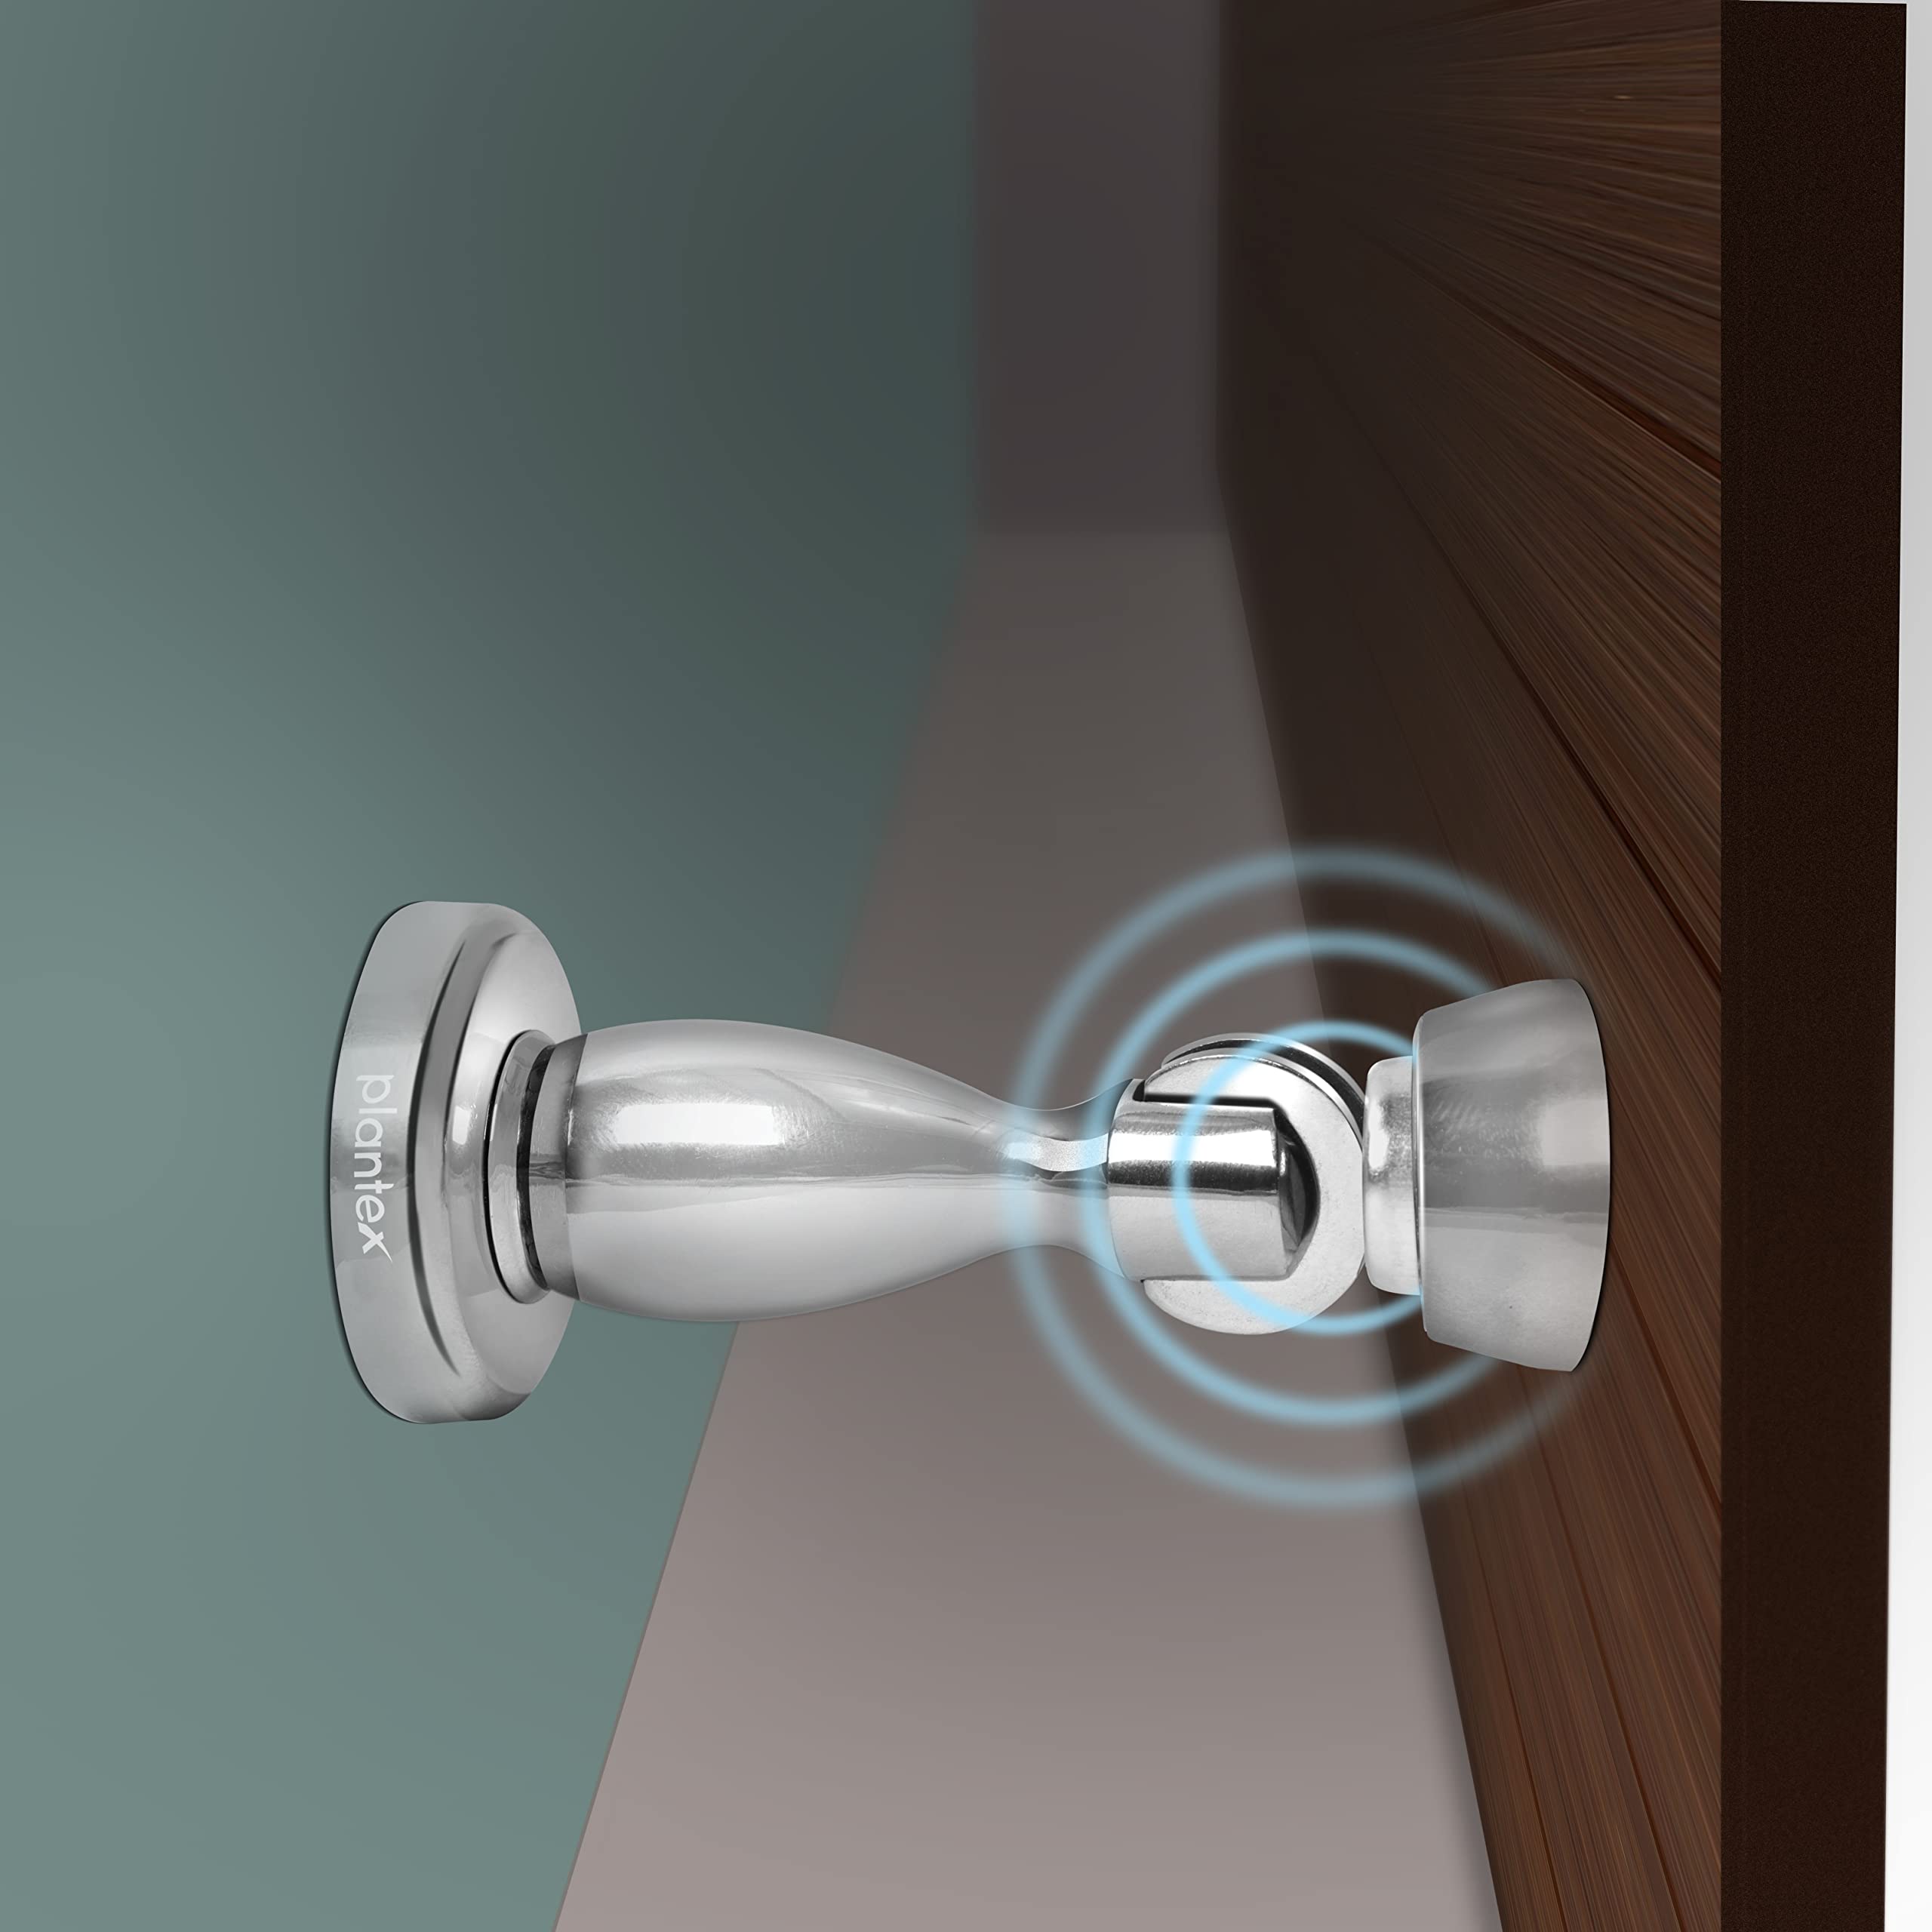 Plantex Magnetic Door Stopper for Home/ 360 Degree Magnet Door Catcher/Door Holder for Main Door/Bedroom/Office and Hotel Door - Pack of 4 (4 inch, Chrome)